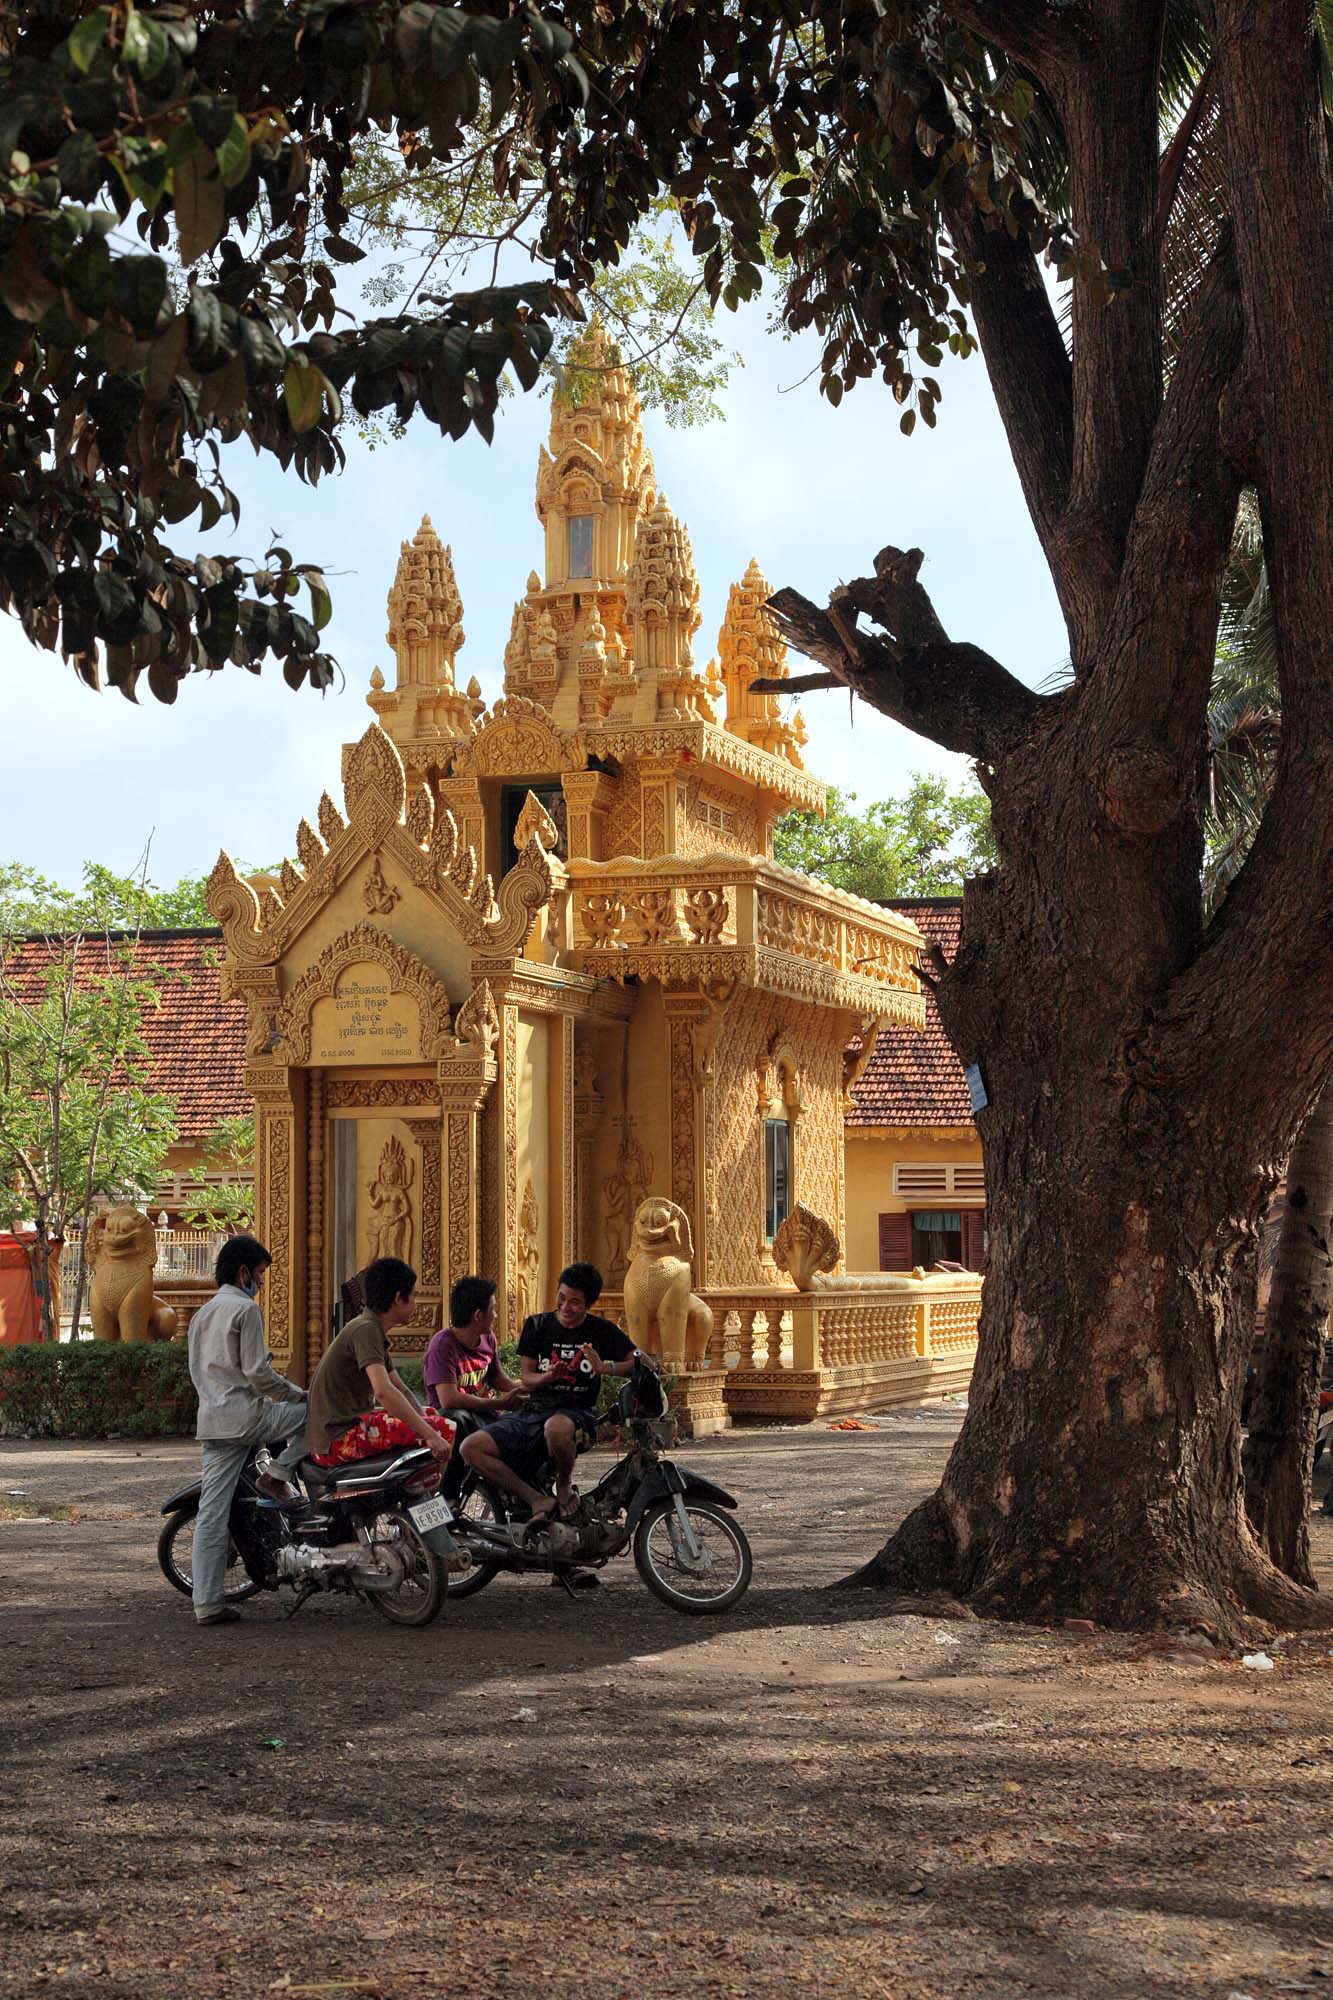 bill-hocker-shrine-phnom-sampow-cambodia-2010